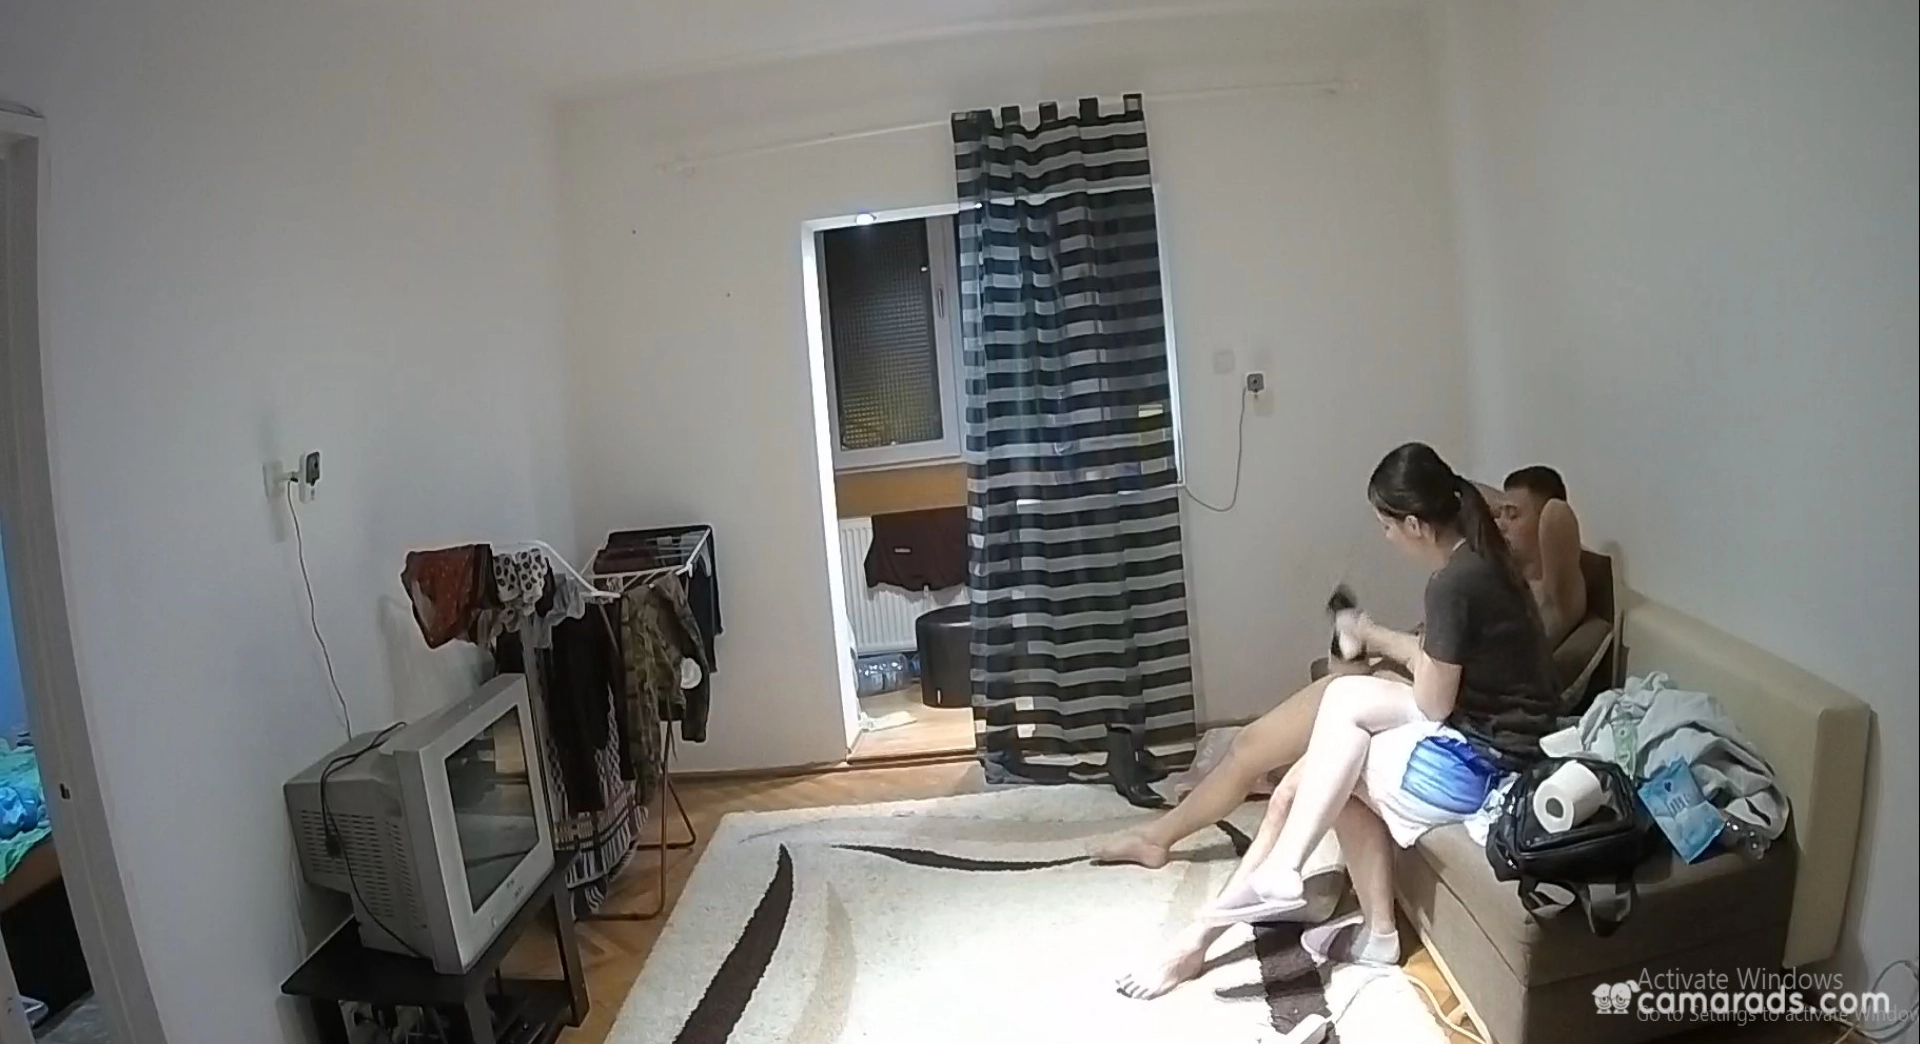 Amy masturbate her boyfriend on couch